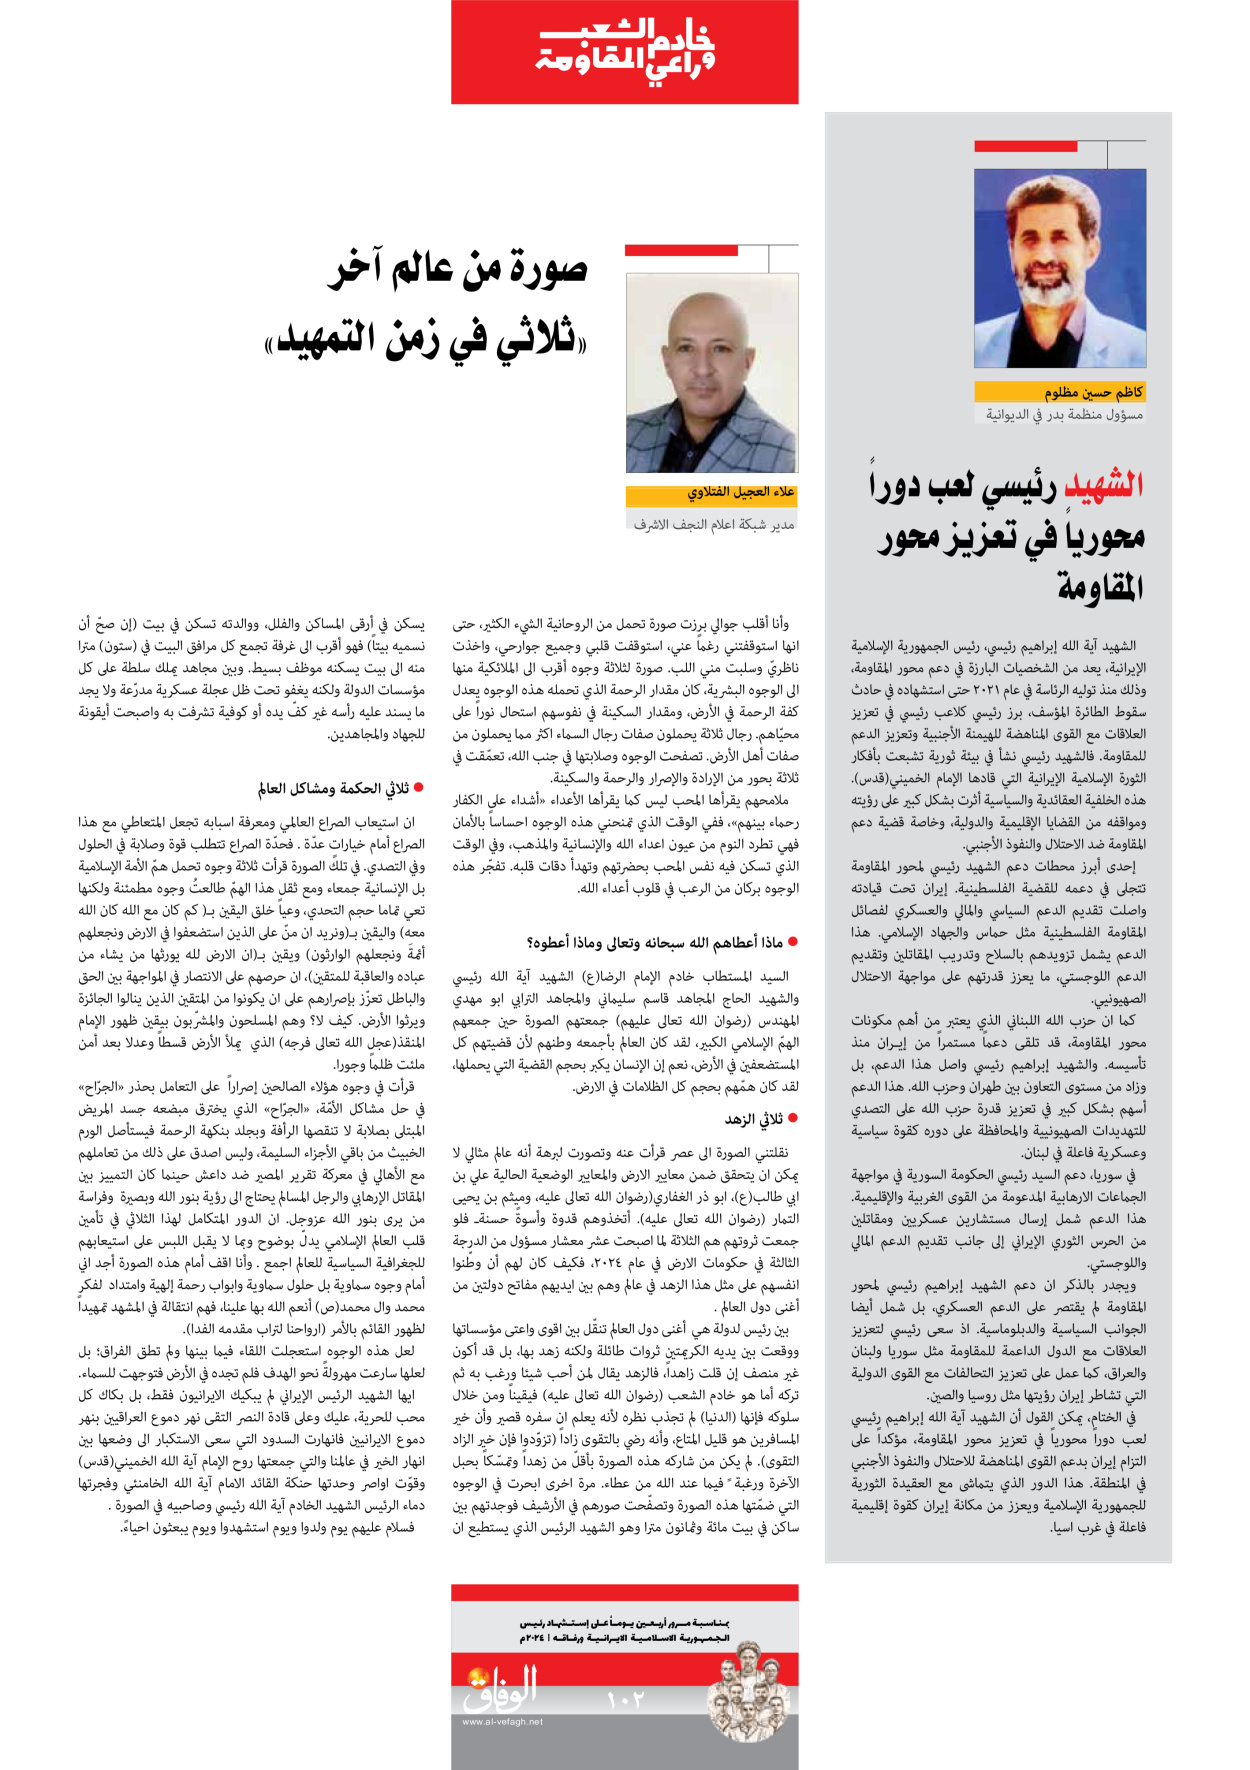 صحیفة ایران الدولیة الوفاق - ملحق ویژه نامه چهلم شهید رییسی - ٢٩ يونيو ٢٠٢٤ - الصفحة ۱۰۱